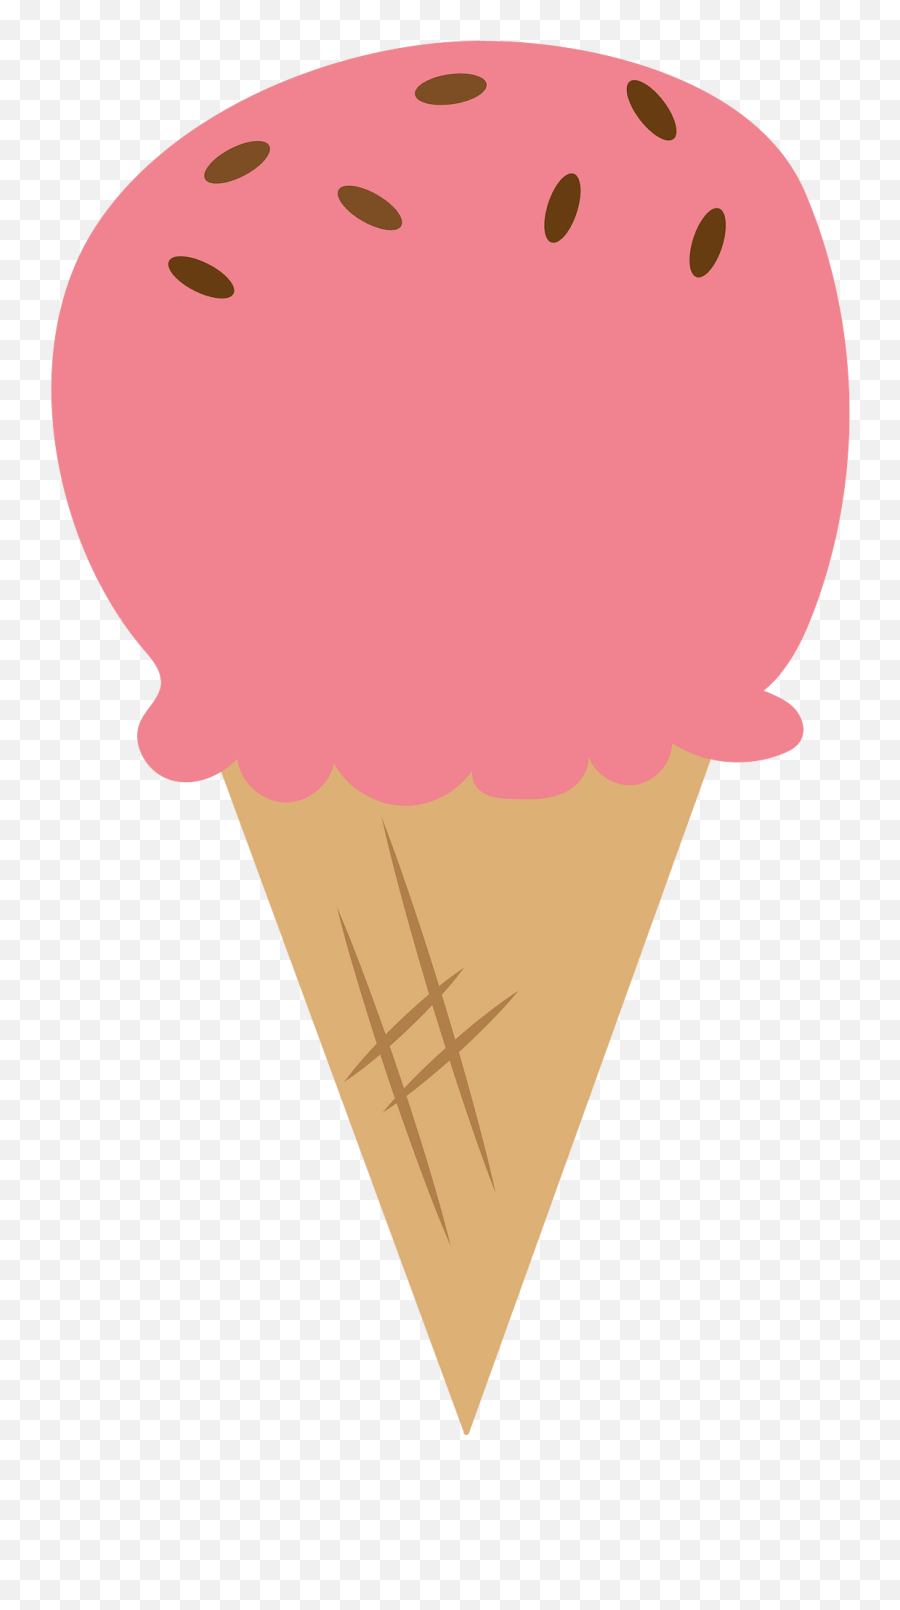 Ice Cream Cone Clipart Free Download Transparent Png Emoji,Ice Cream Cones Clipart